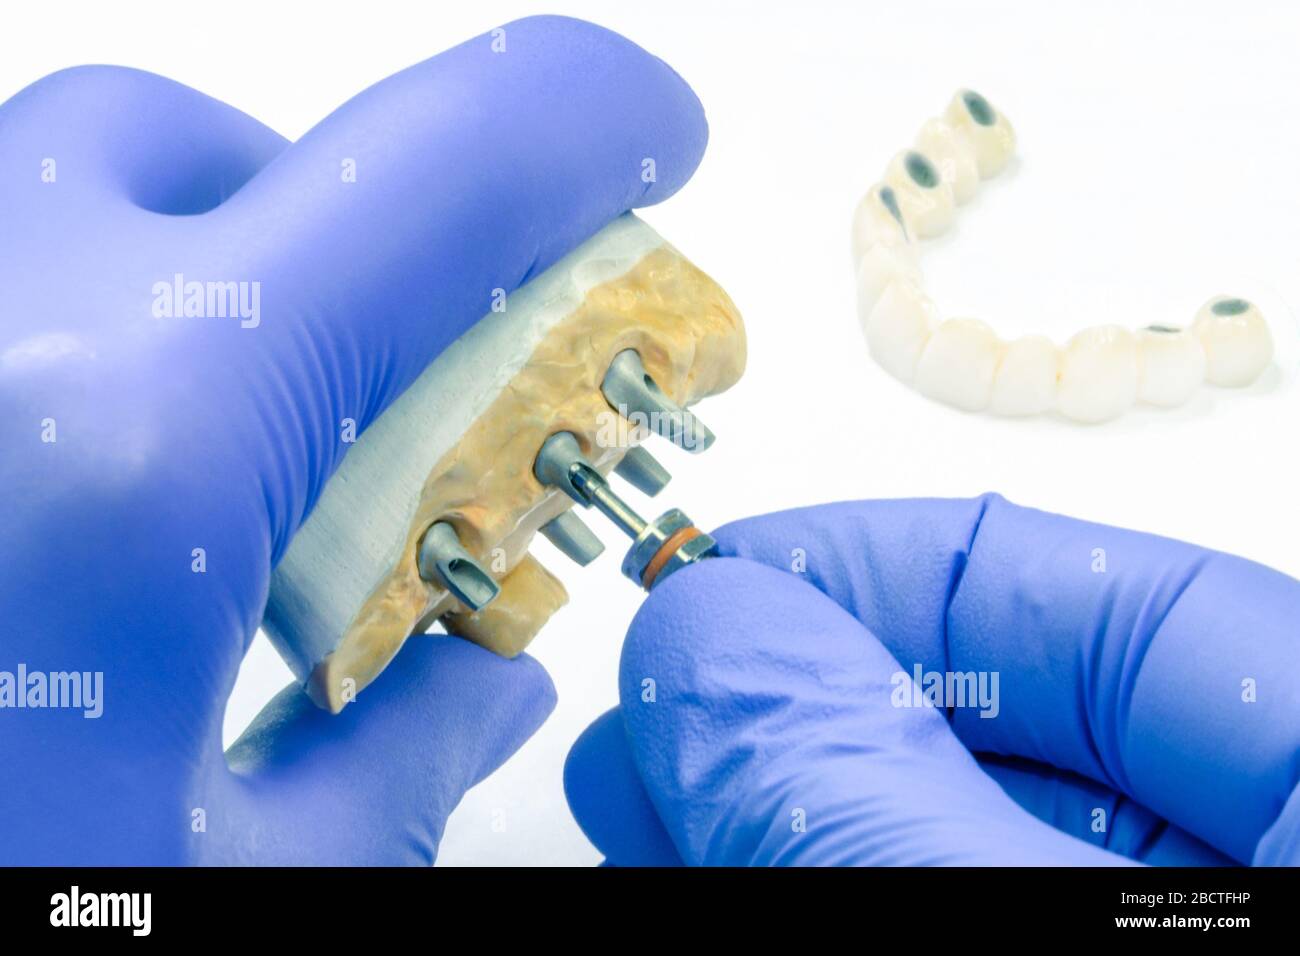 Der Zahnarzt spinnt das Zahnimplantat. Das Konzept der Prothetik auf Zahnimplantaten und die Herstellung von keramischen künstlichen Zähnen auf Implantaten Stockfoto